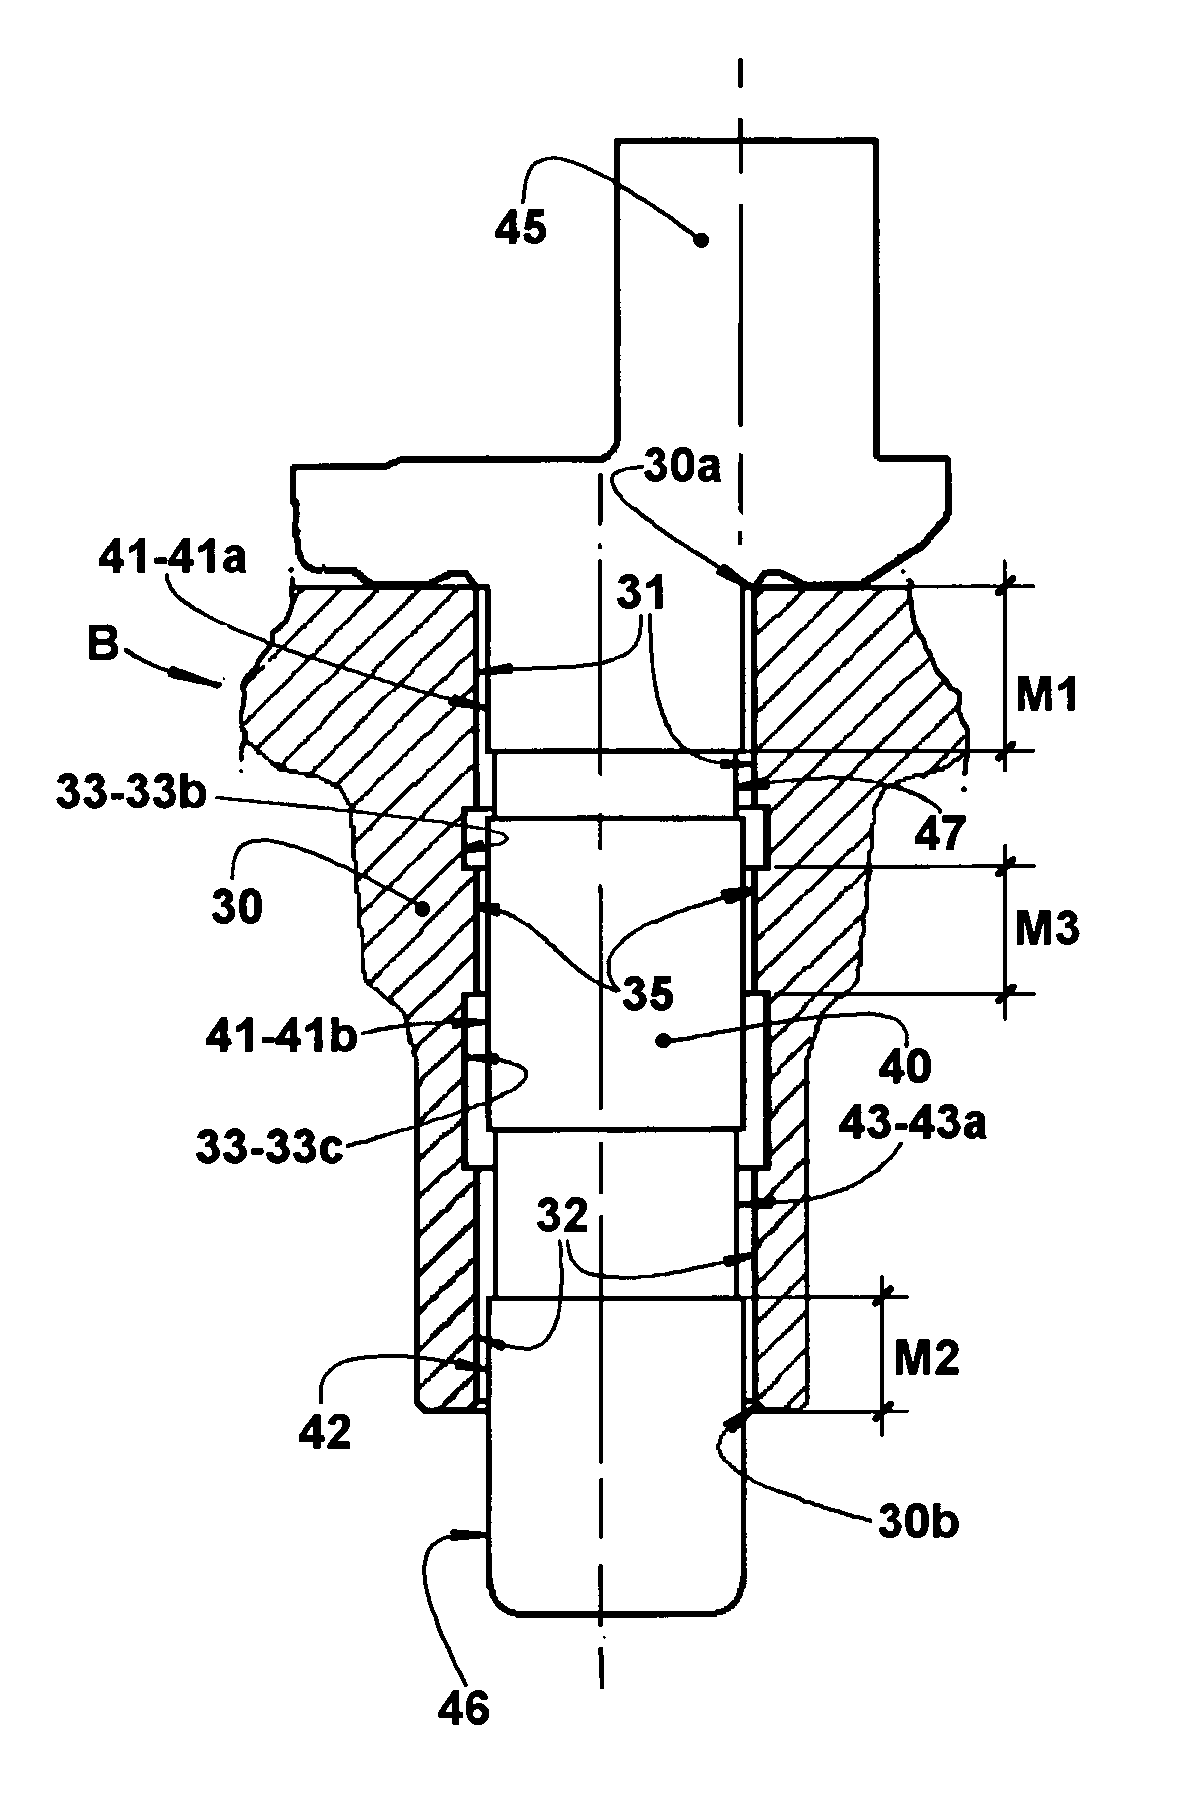 Bearing arrangement for a reciprocating compressor